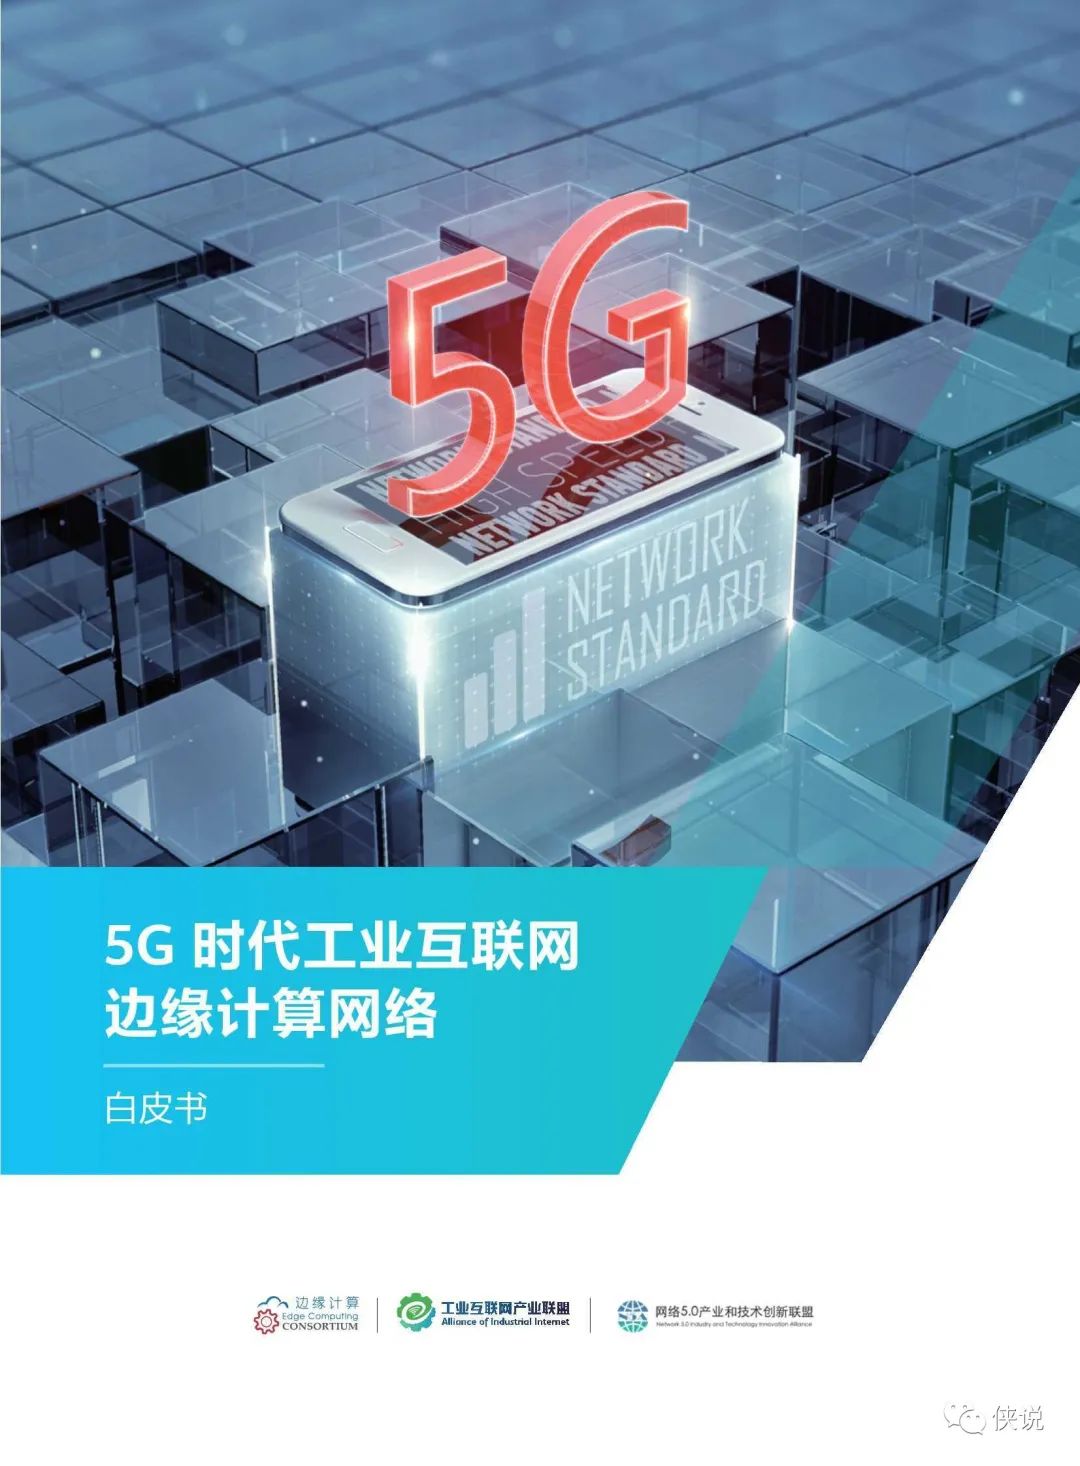 联通支持5g网络制式_联通支持5g了吗_中国联通支持5g吗